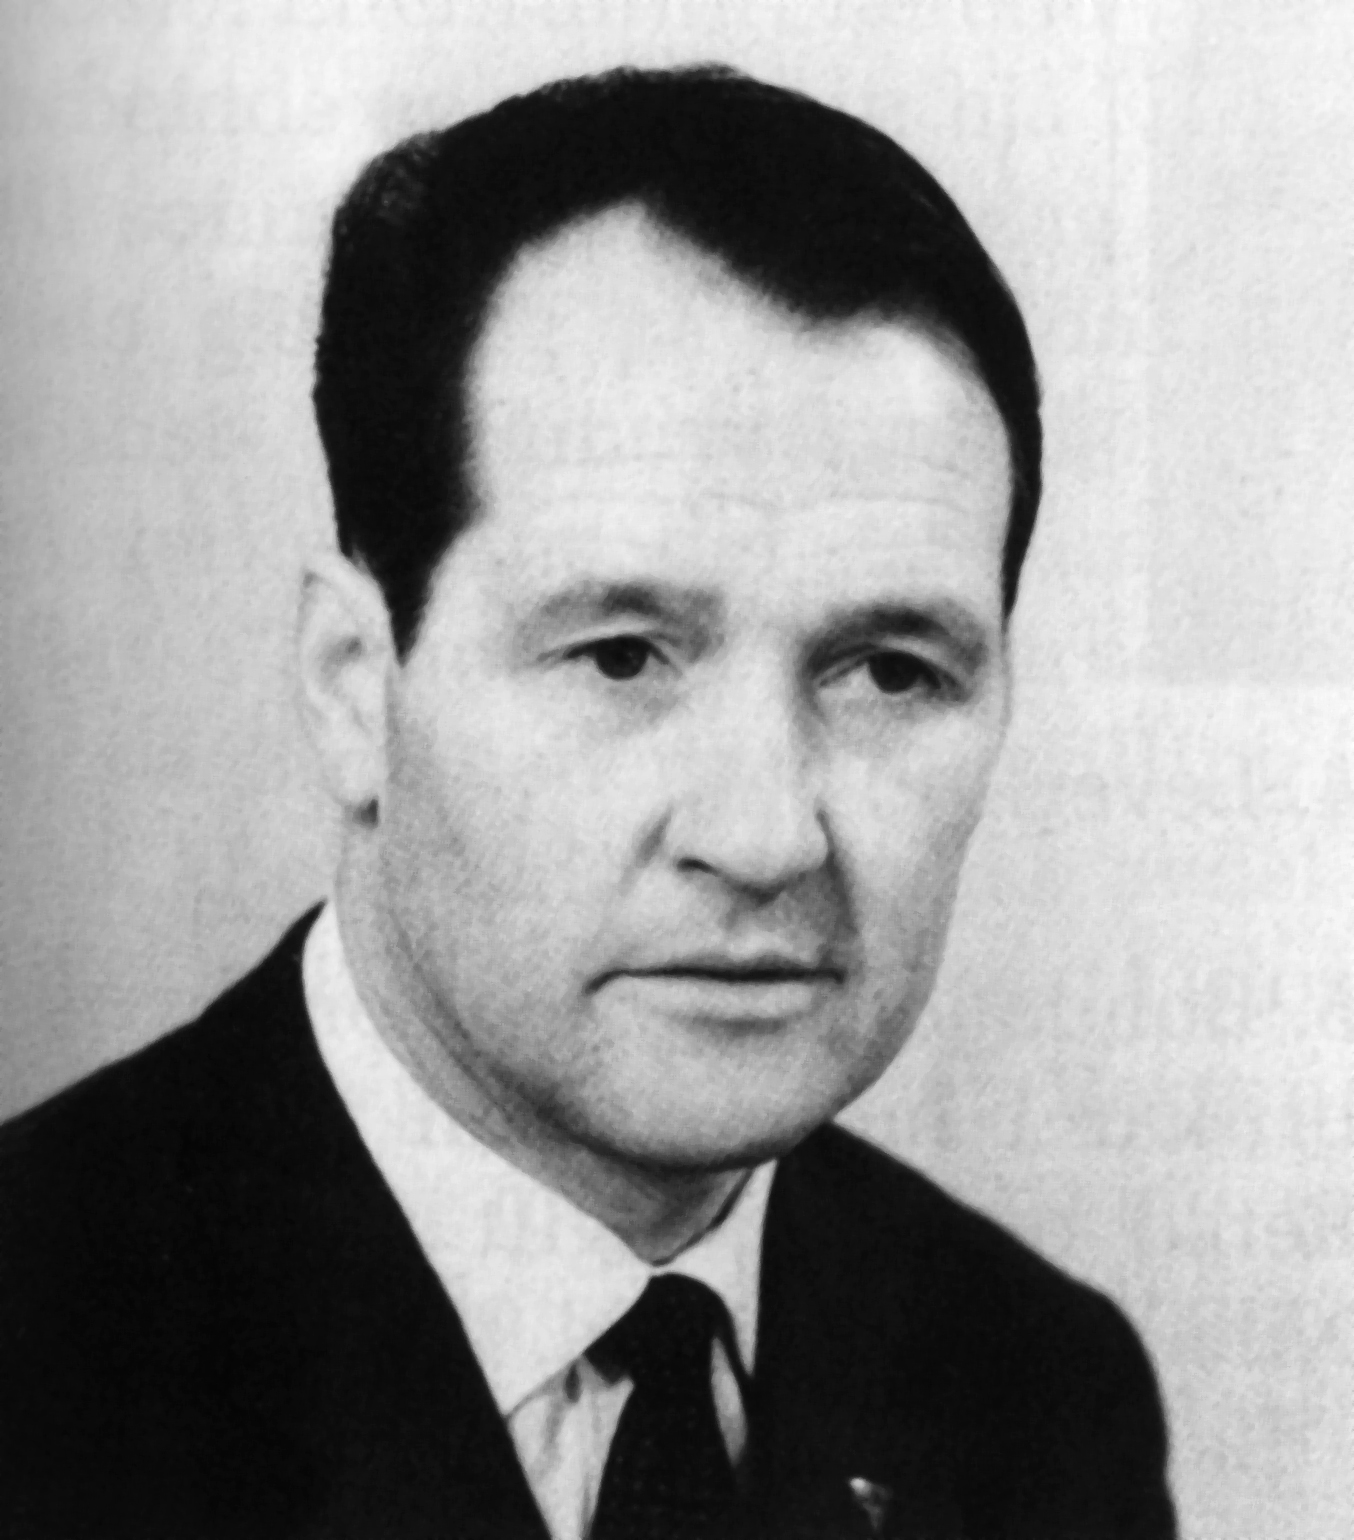 Ved konstitueringa av kommunevalet i desember i 1971 vart Oskar V. Sundgot (KrF) vald til ordførar